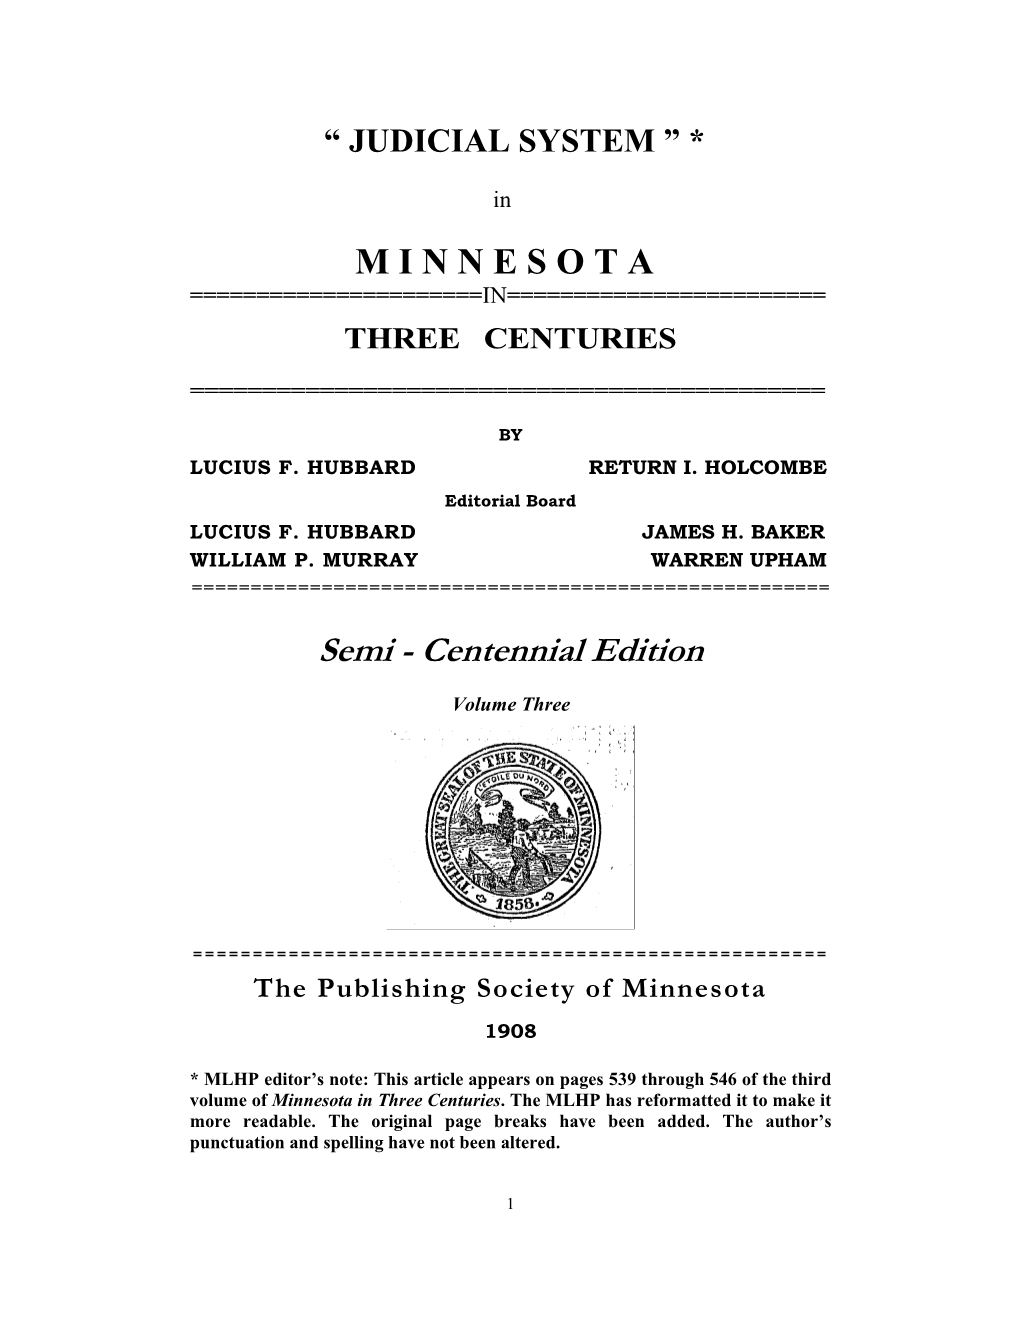 Semi - Centennial Edition